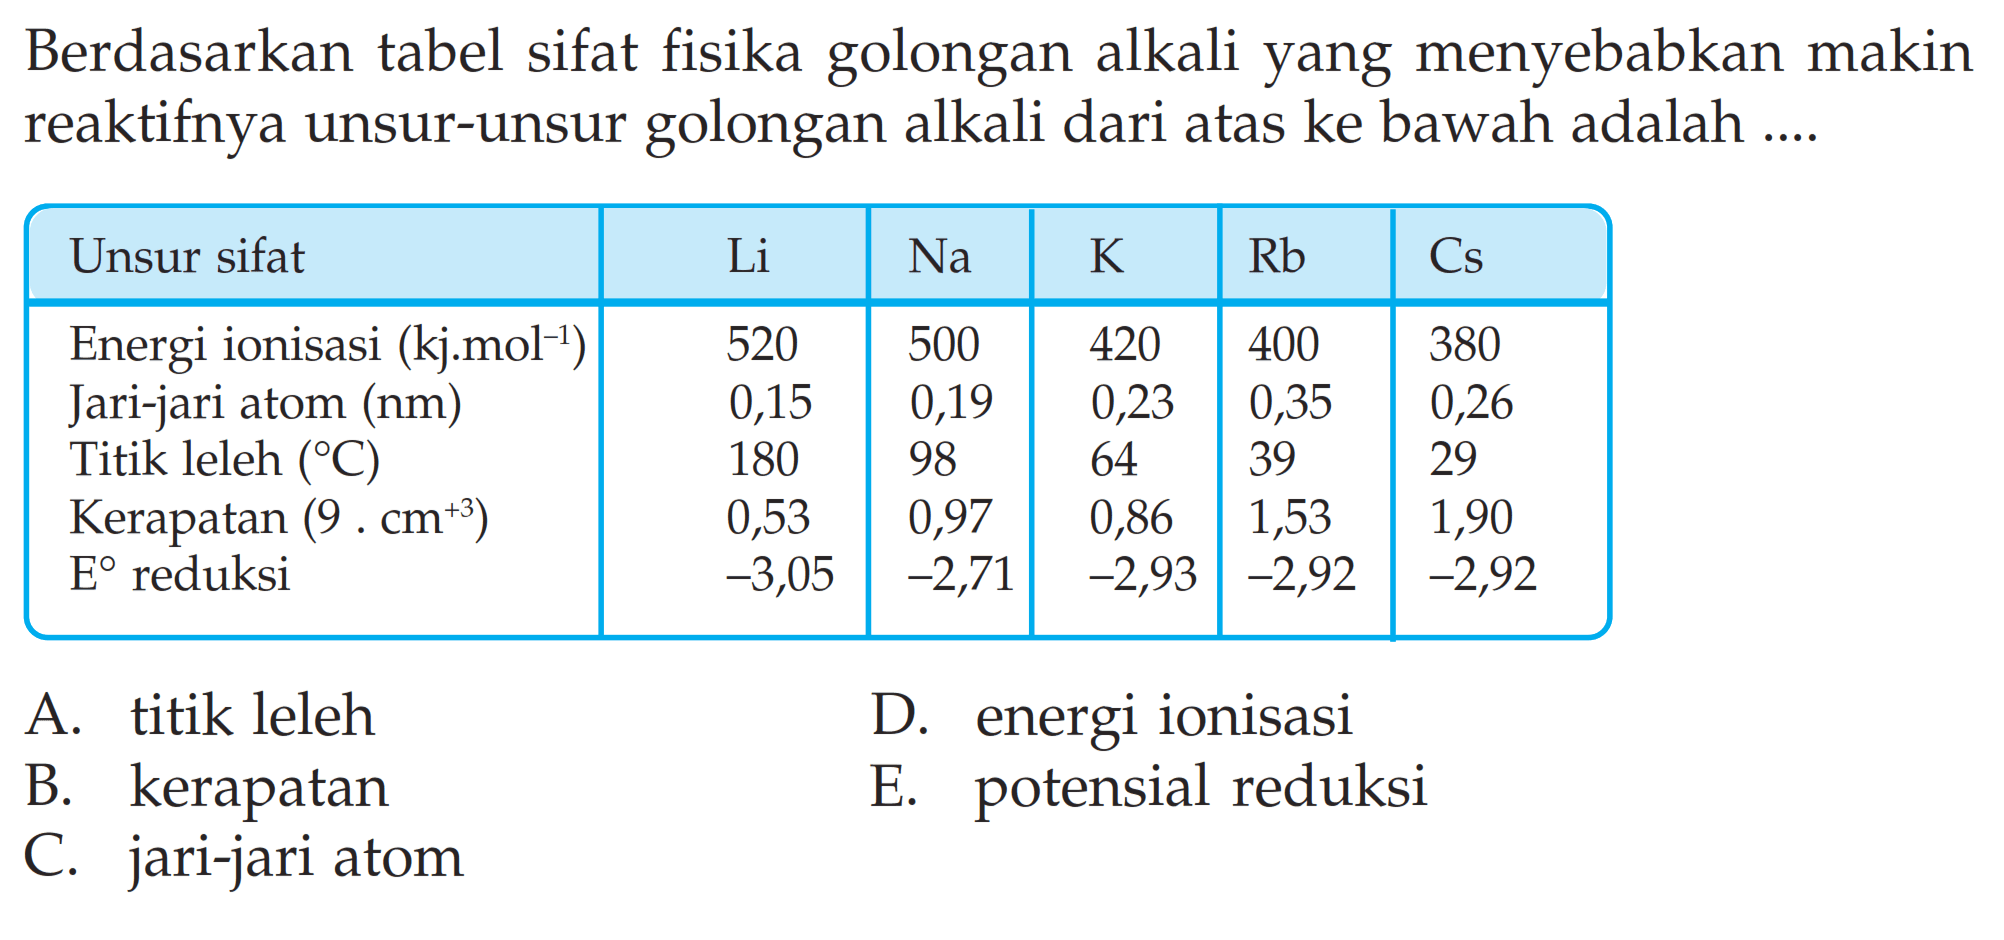 Berdasarkan tabel sifat fisika golongan alkali yang menyebabkan makin reaktifnya unsur-unsur golongan alkali dari atas ke bawah adalah .... Unsur sifat Li Na K Rb Cs Energi ionisasi (kJ.mol^-1) 520 500 420 400 380 Jari-jari atom (nm) 0,15 0,19 0,23 0,35 0,26 Titik leleh (C) 180 98 64 39 29 Kerapatan (9 . cm^(+3)) 0,53 0,97 0,86 1,53 1,90 E reduksi -3,05 -2,71 -2,93 -2,92 -2,92